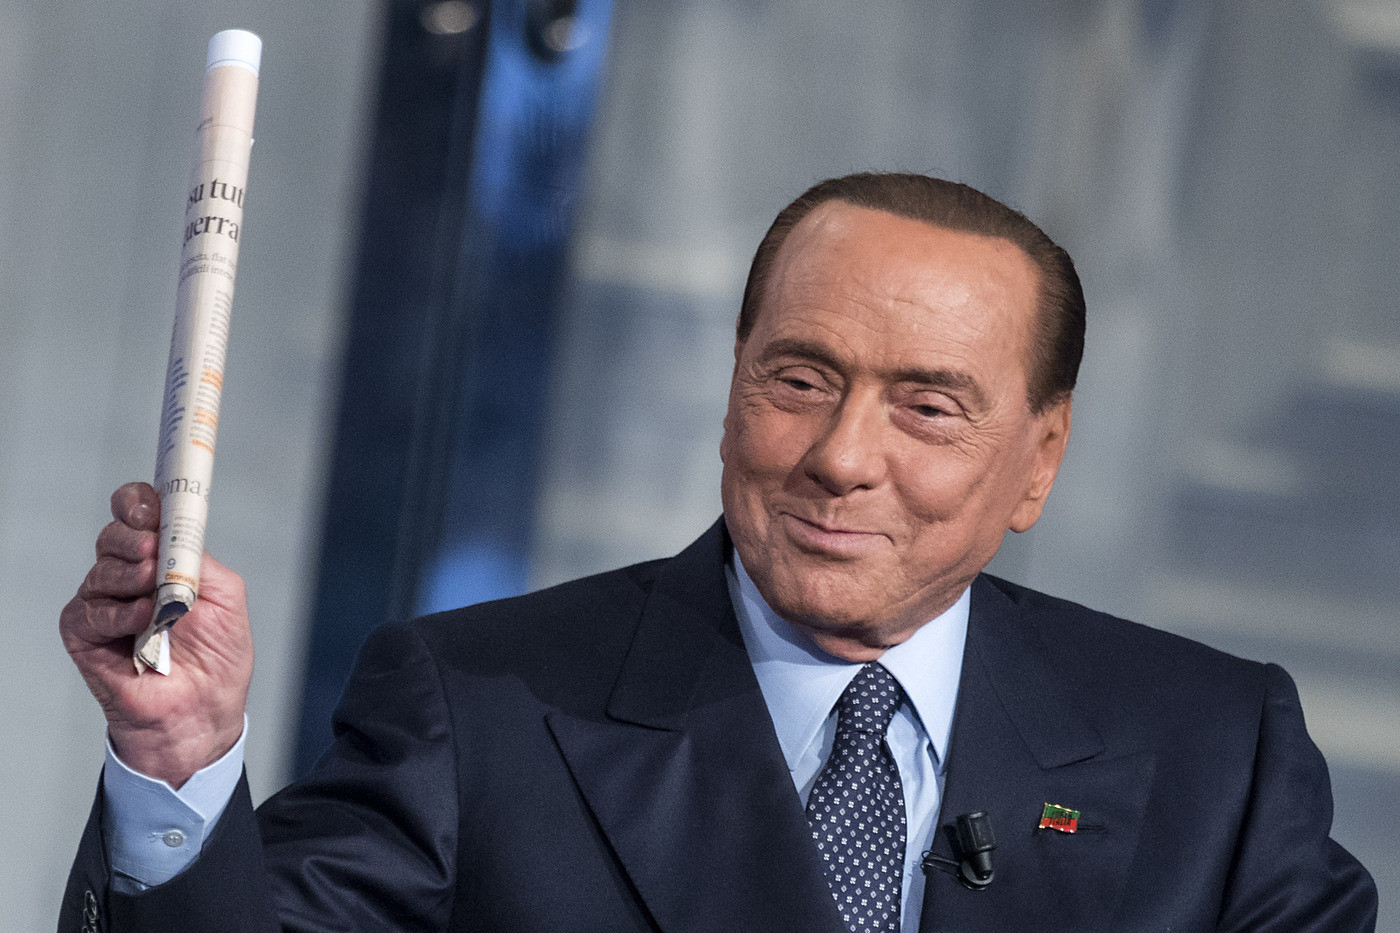 Europee, Berlusconi: “Salvini con il Ppe? Ci riuscirò, ho troppo talento da mediatore”